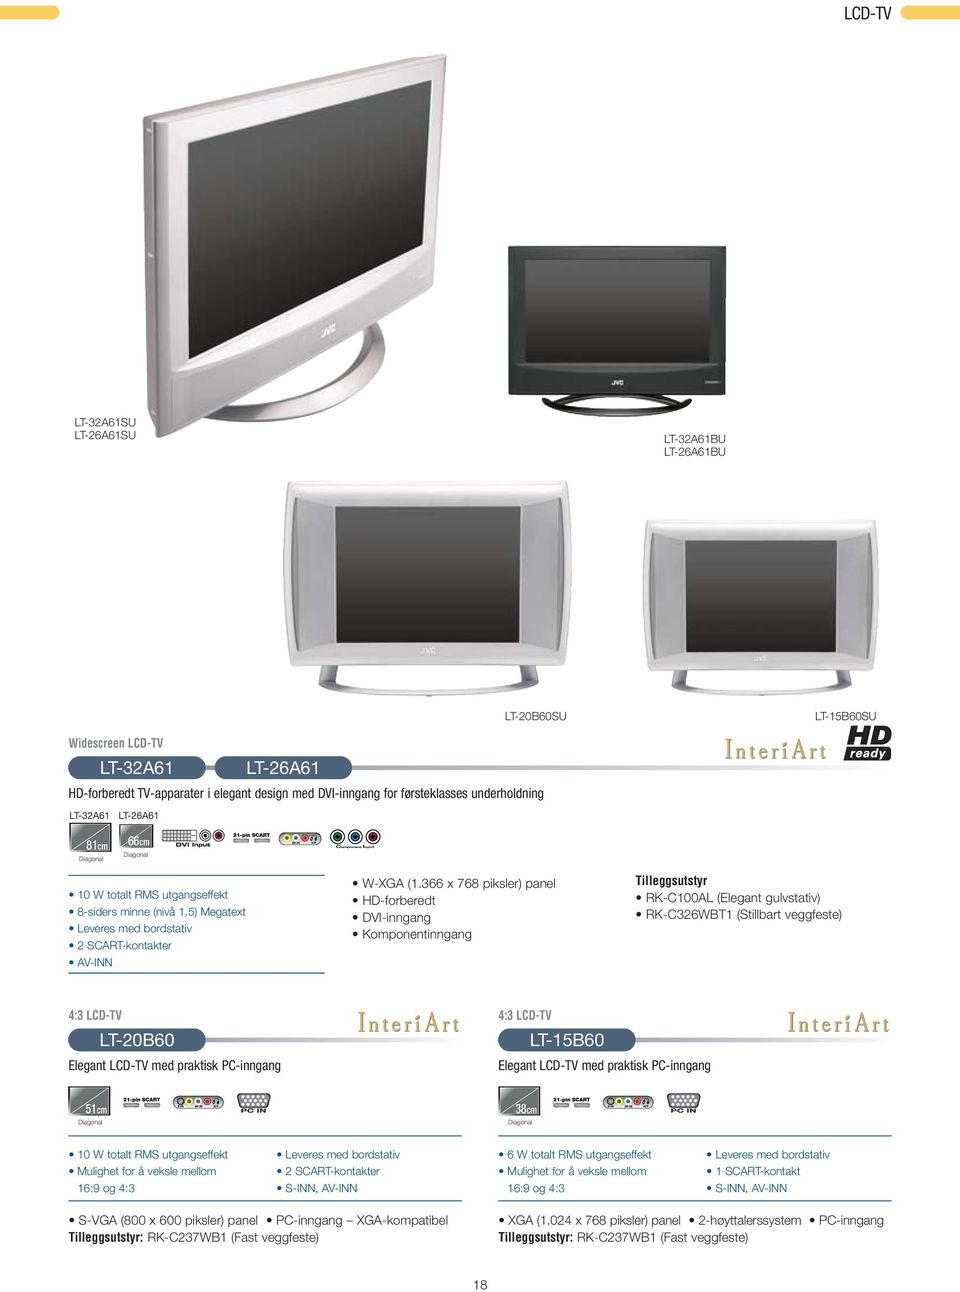 366 x 768 piksler) panel HD-forberedt DVI-inngang Komponentinngang Tilleggsutstyr RK-C100AL (Elegant gulvstativ) RK-C326WBT1 (Stillbart veggfeste) 4:3 LCD-TV LT-20B60 Elegant LCD-TV med praktisk